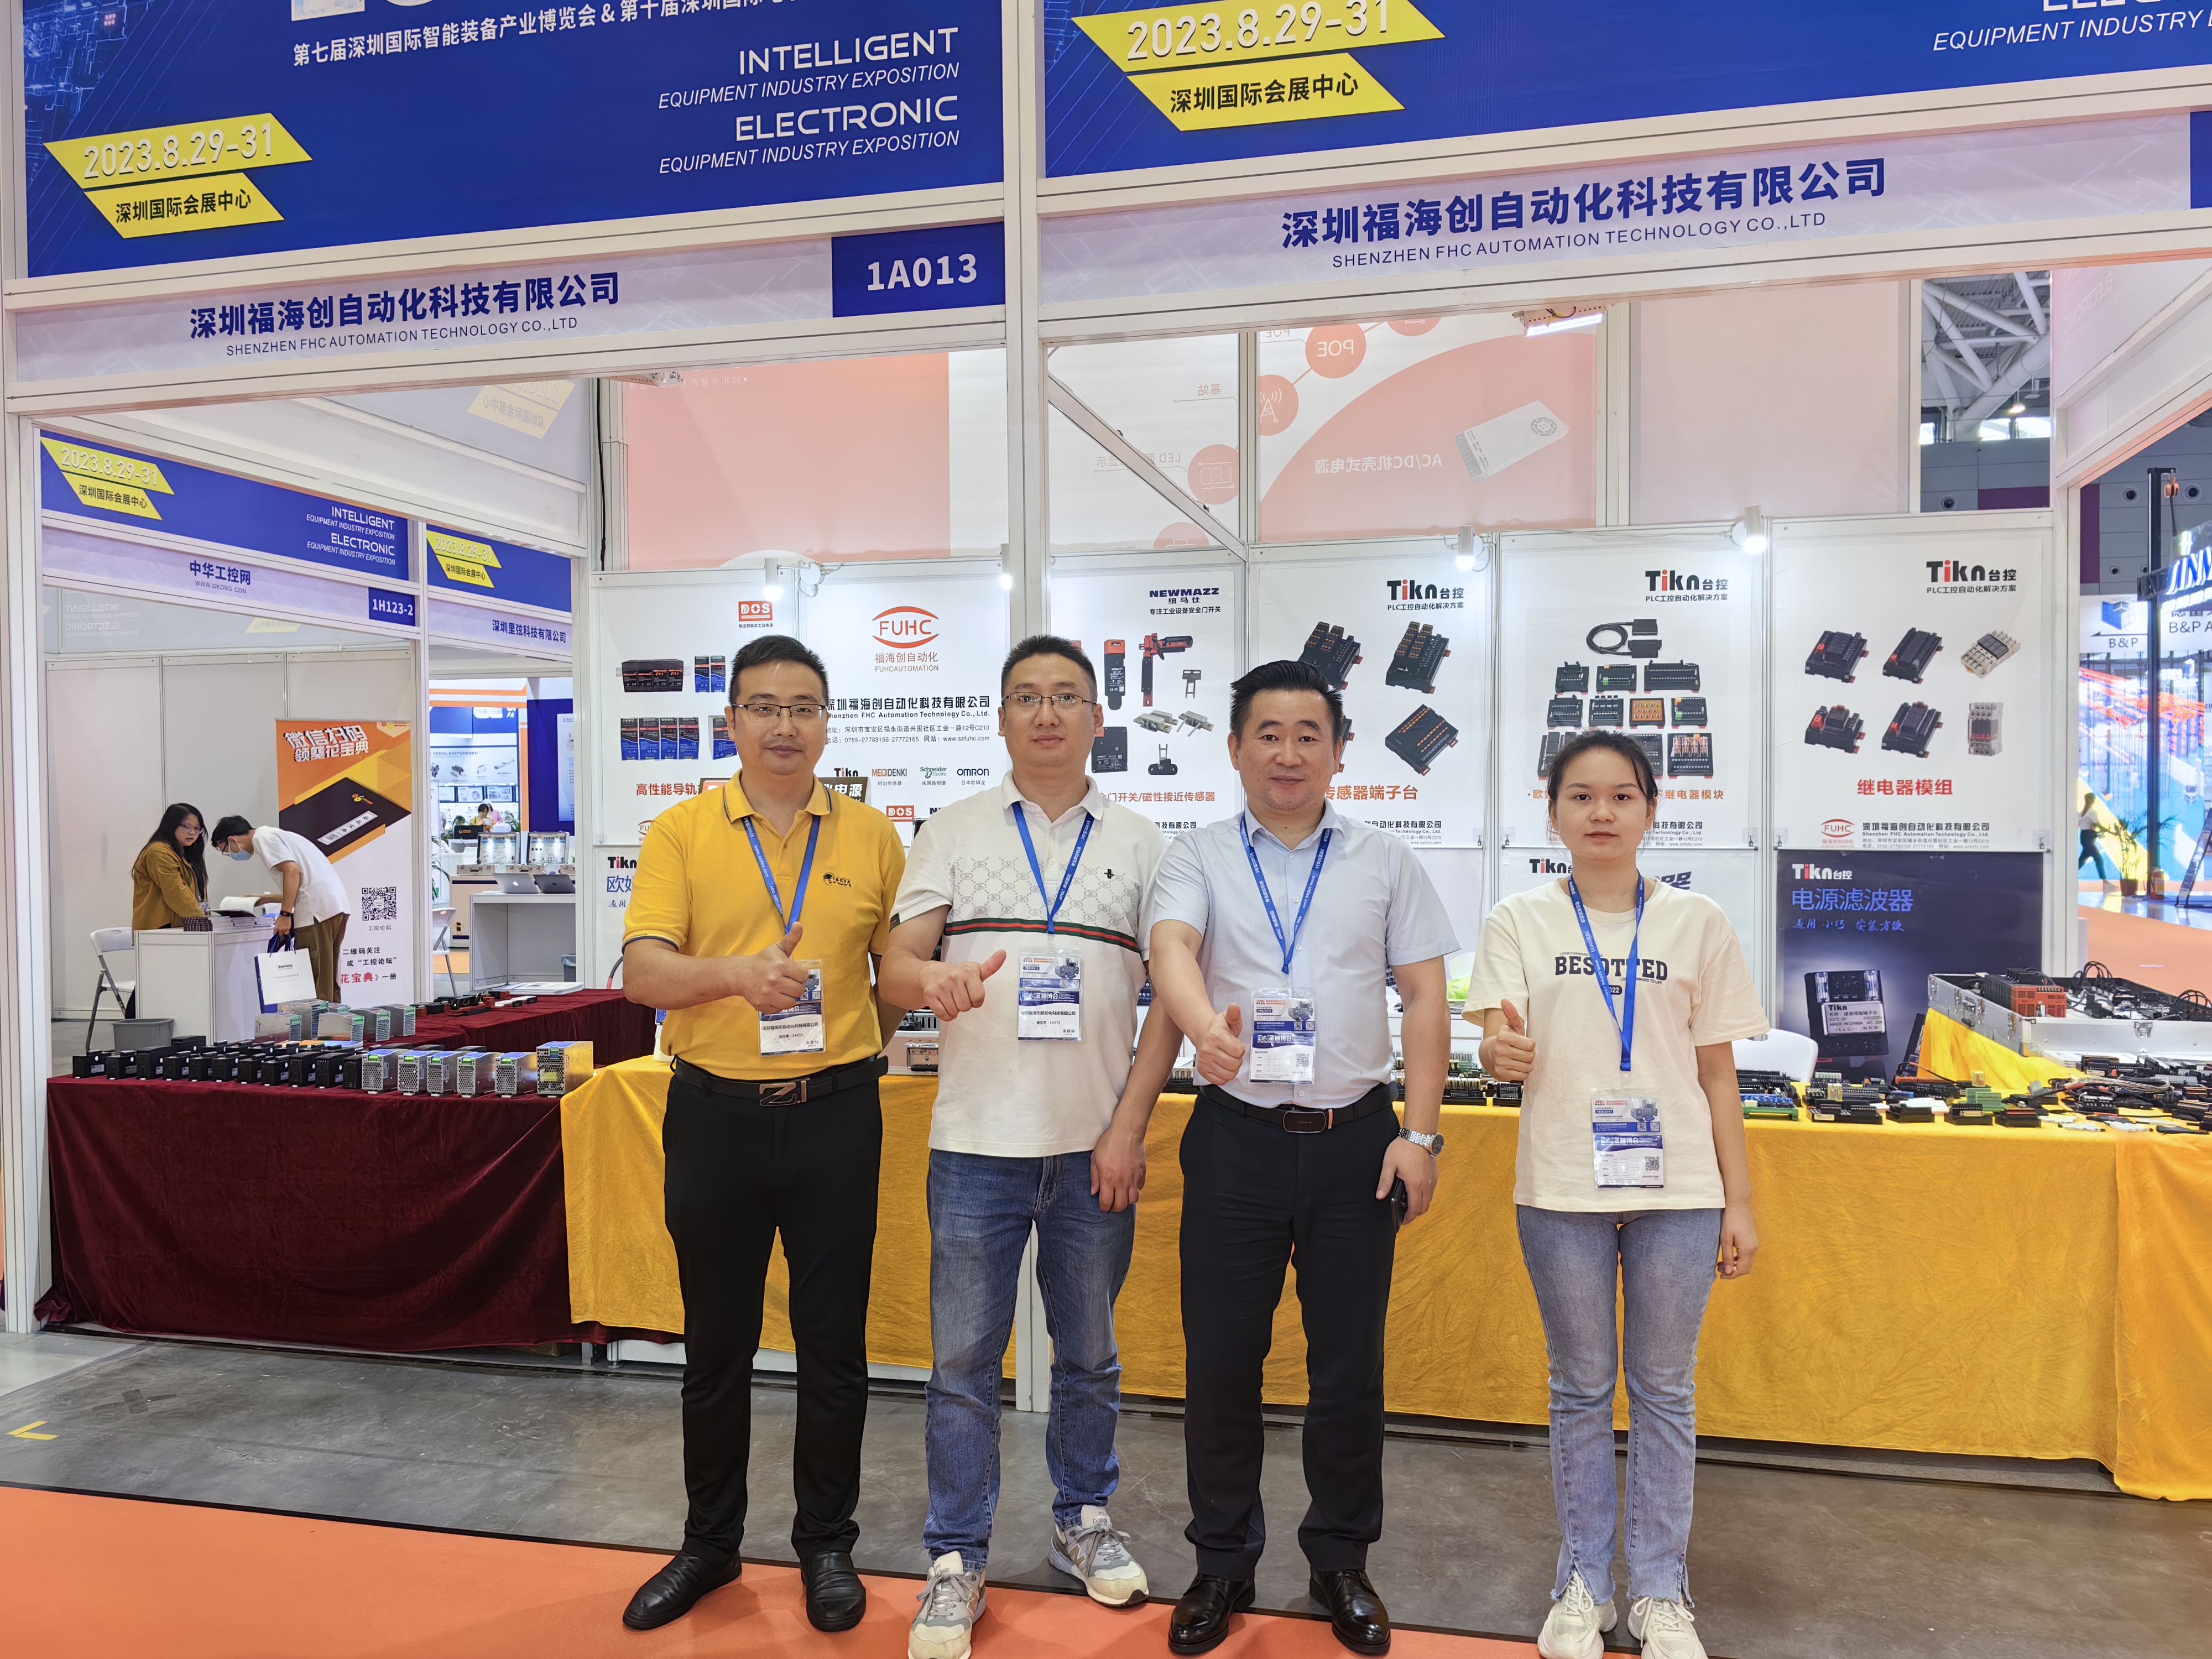 2023年8.29-31深圳国际智能装备产业博览会圆满成功